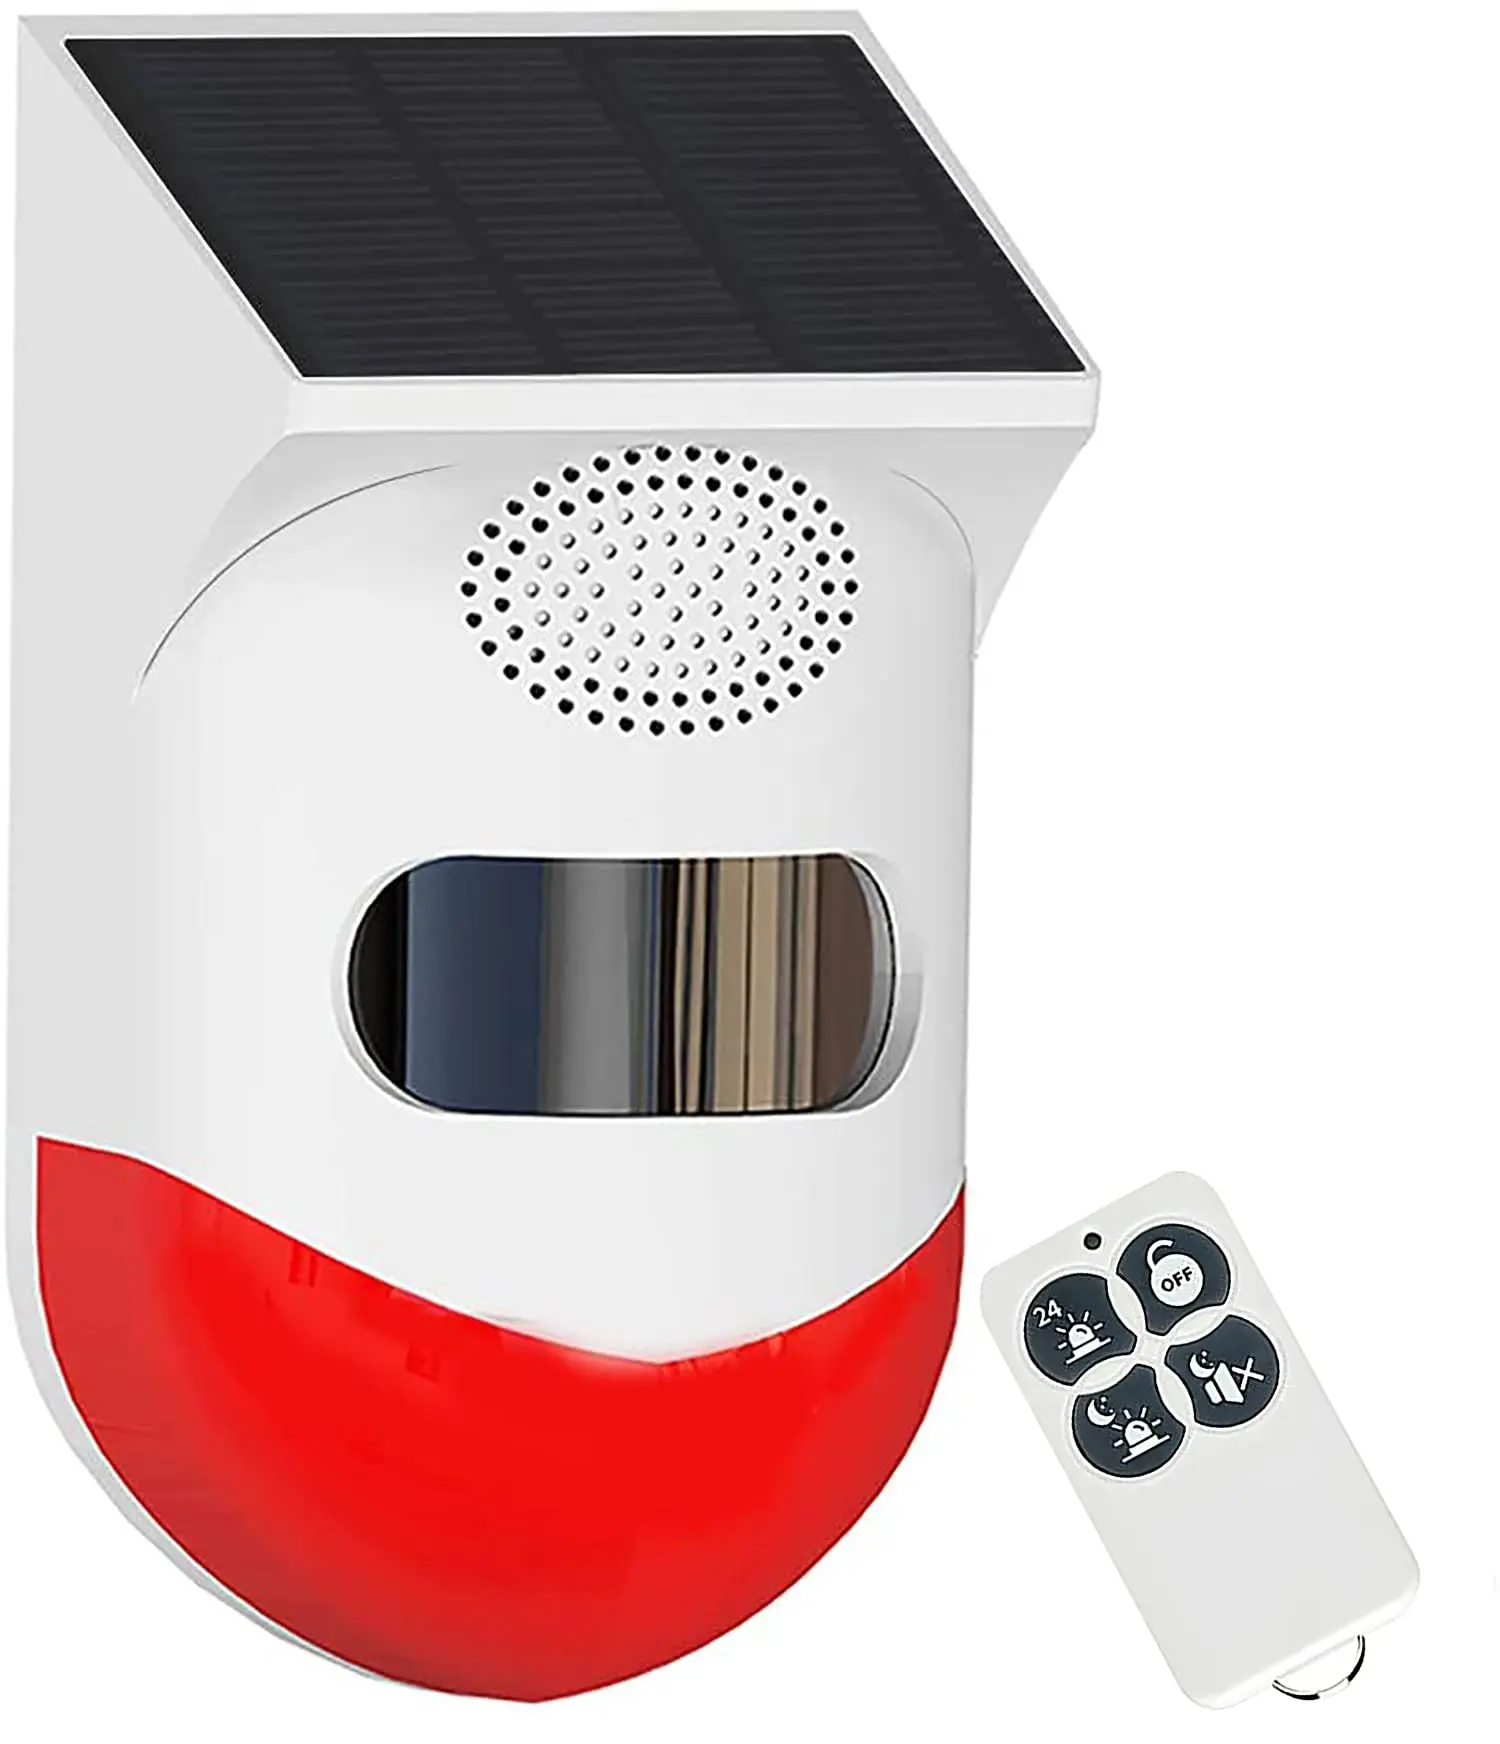 alarma con placa solar - Qué es una alarma solar